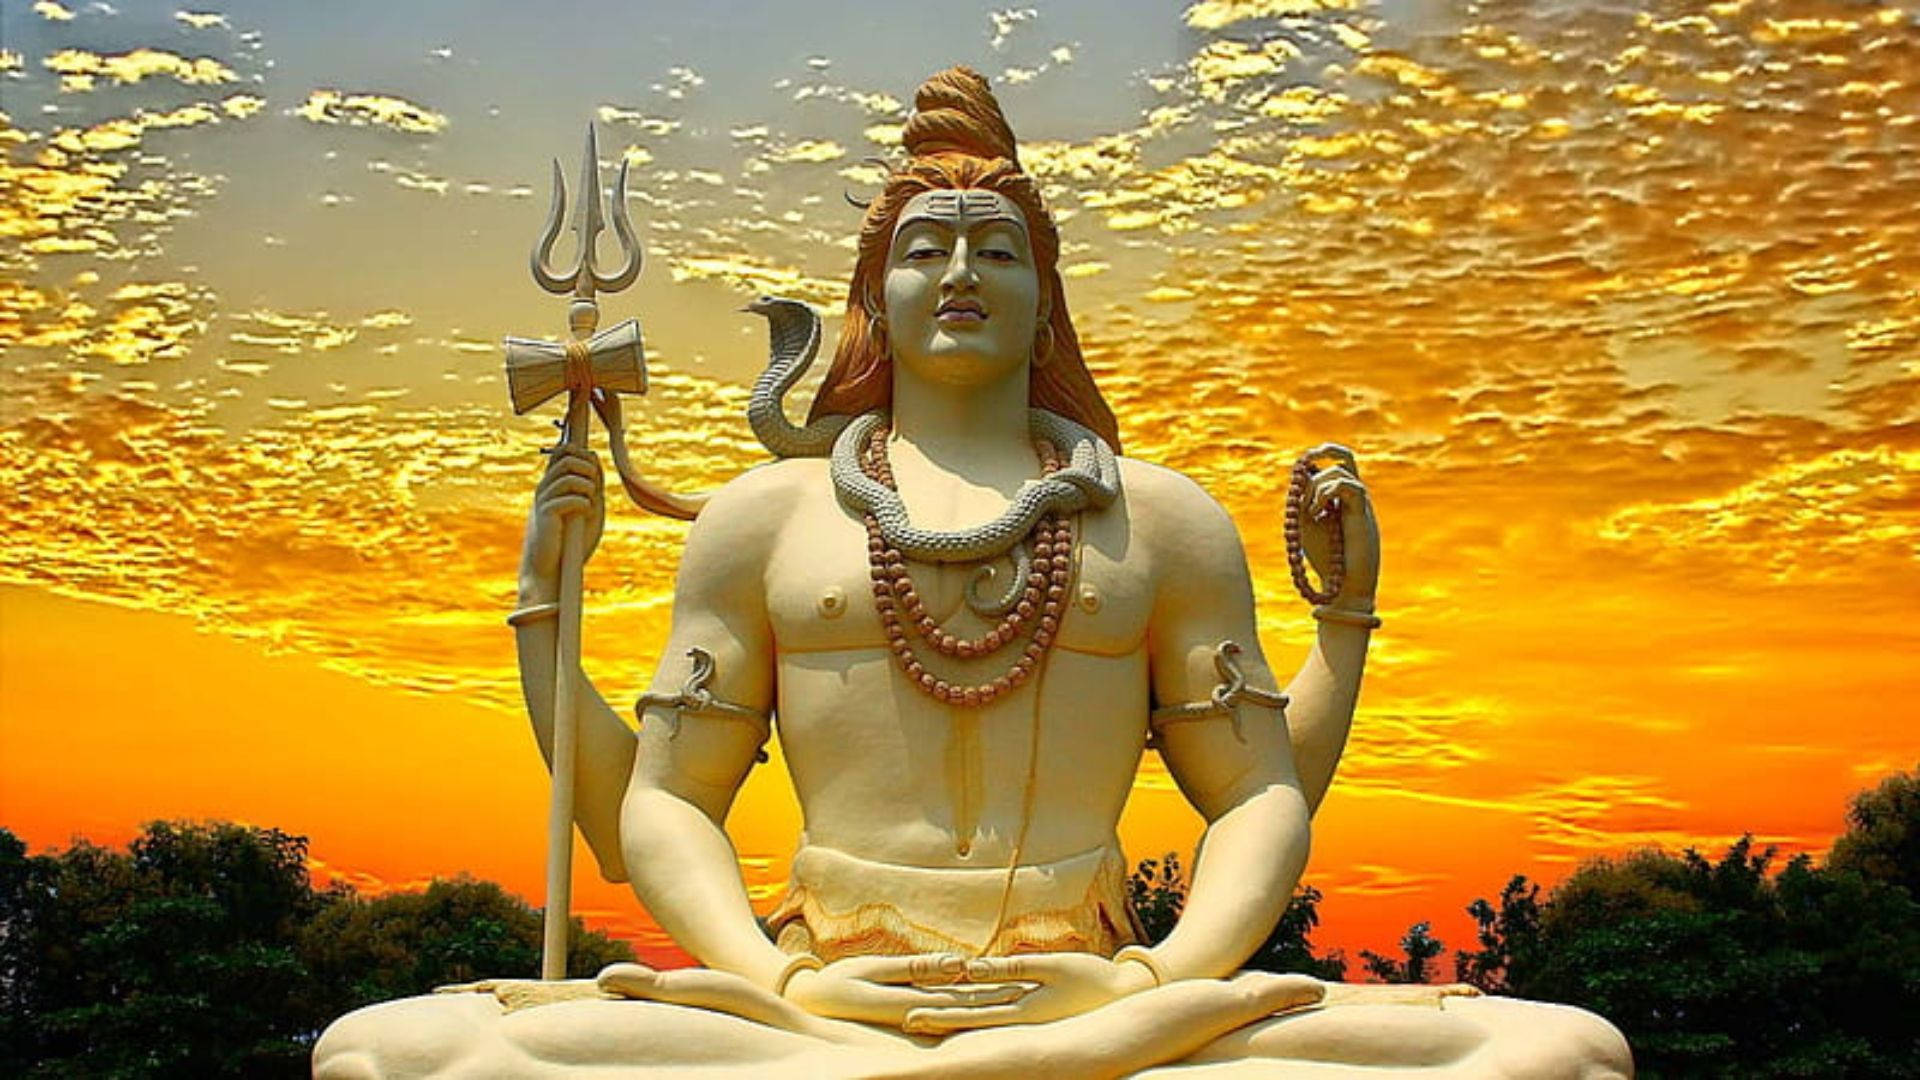 Lord Shiva Hd Sunset Statue Wallpaper